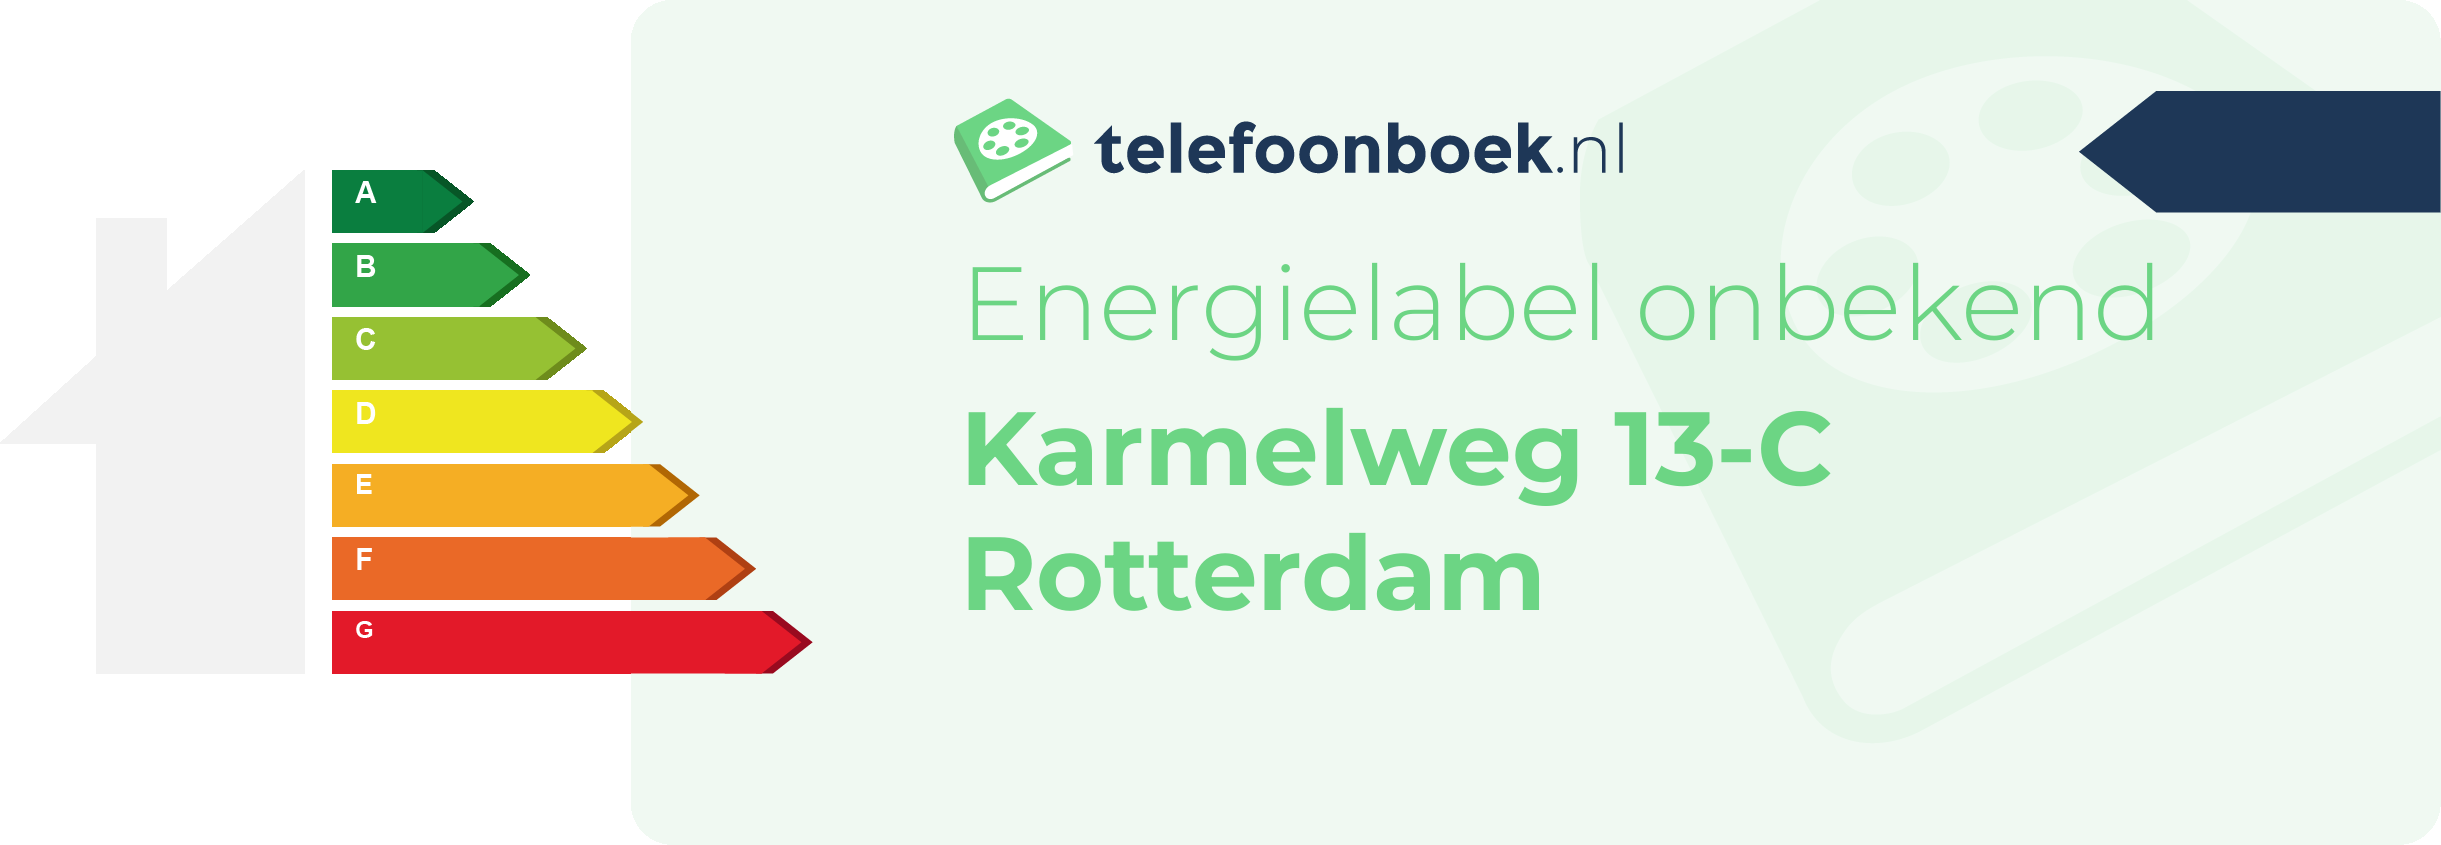 Energielabel Karmelweg 13-C Rotterdam